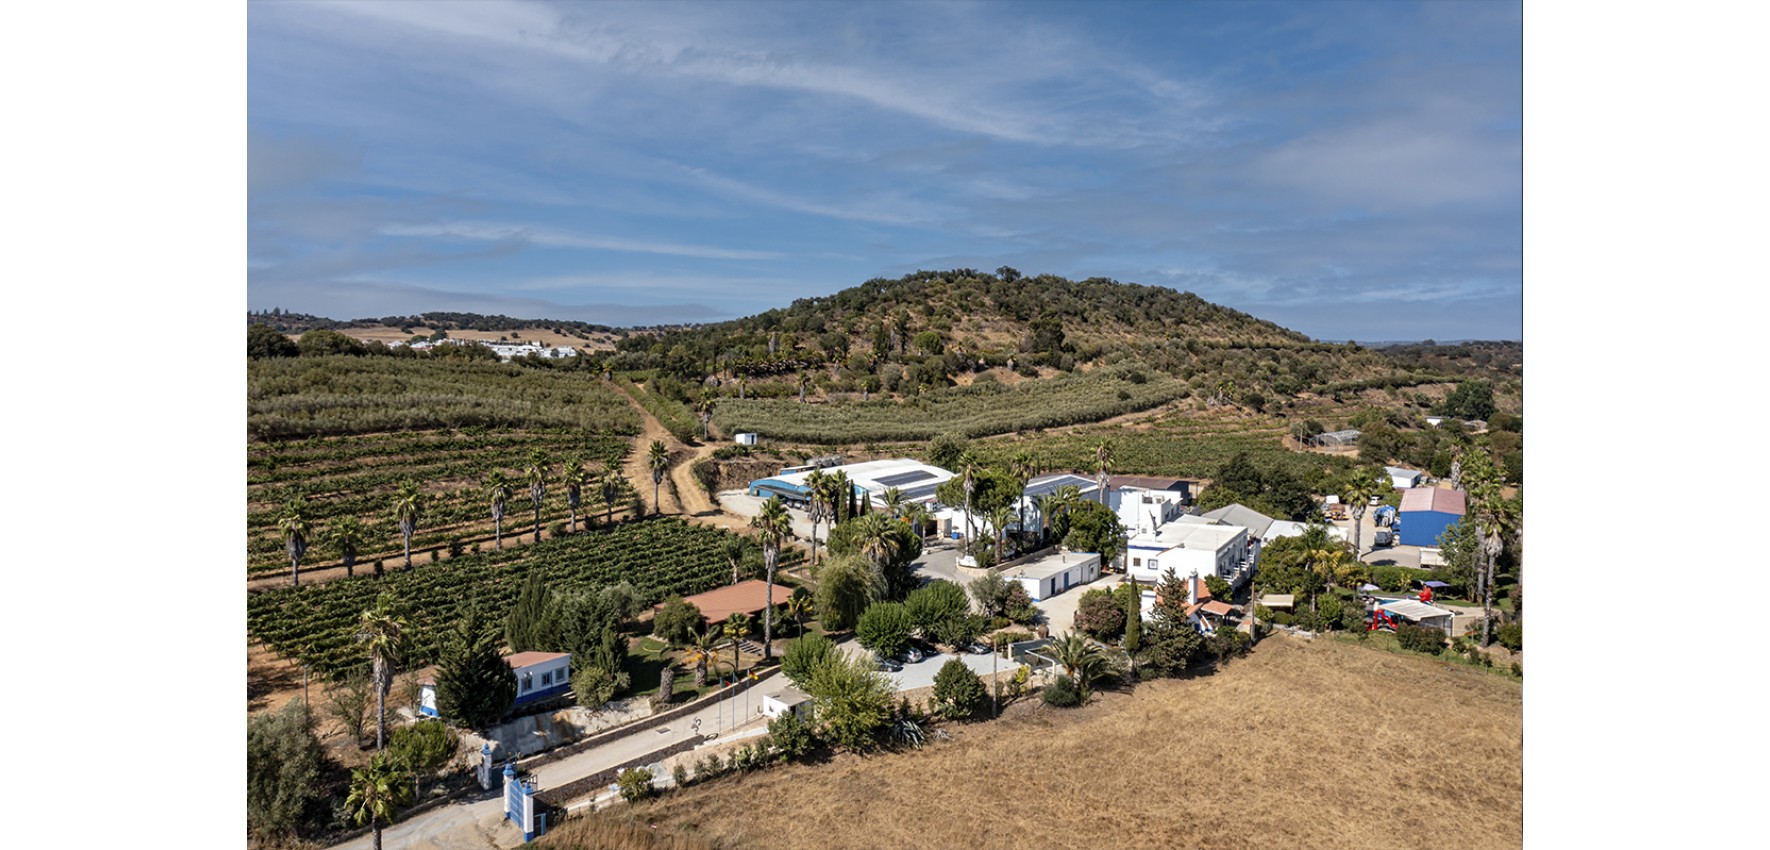 Vinice Alentejo: Portugalský vinařský poklad